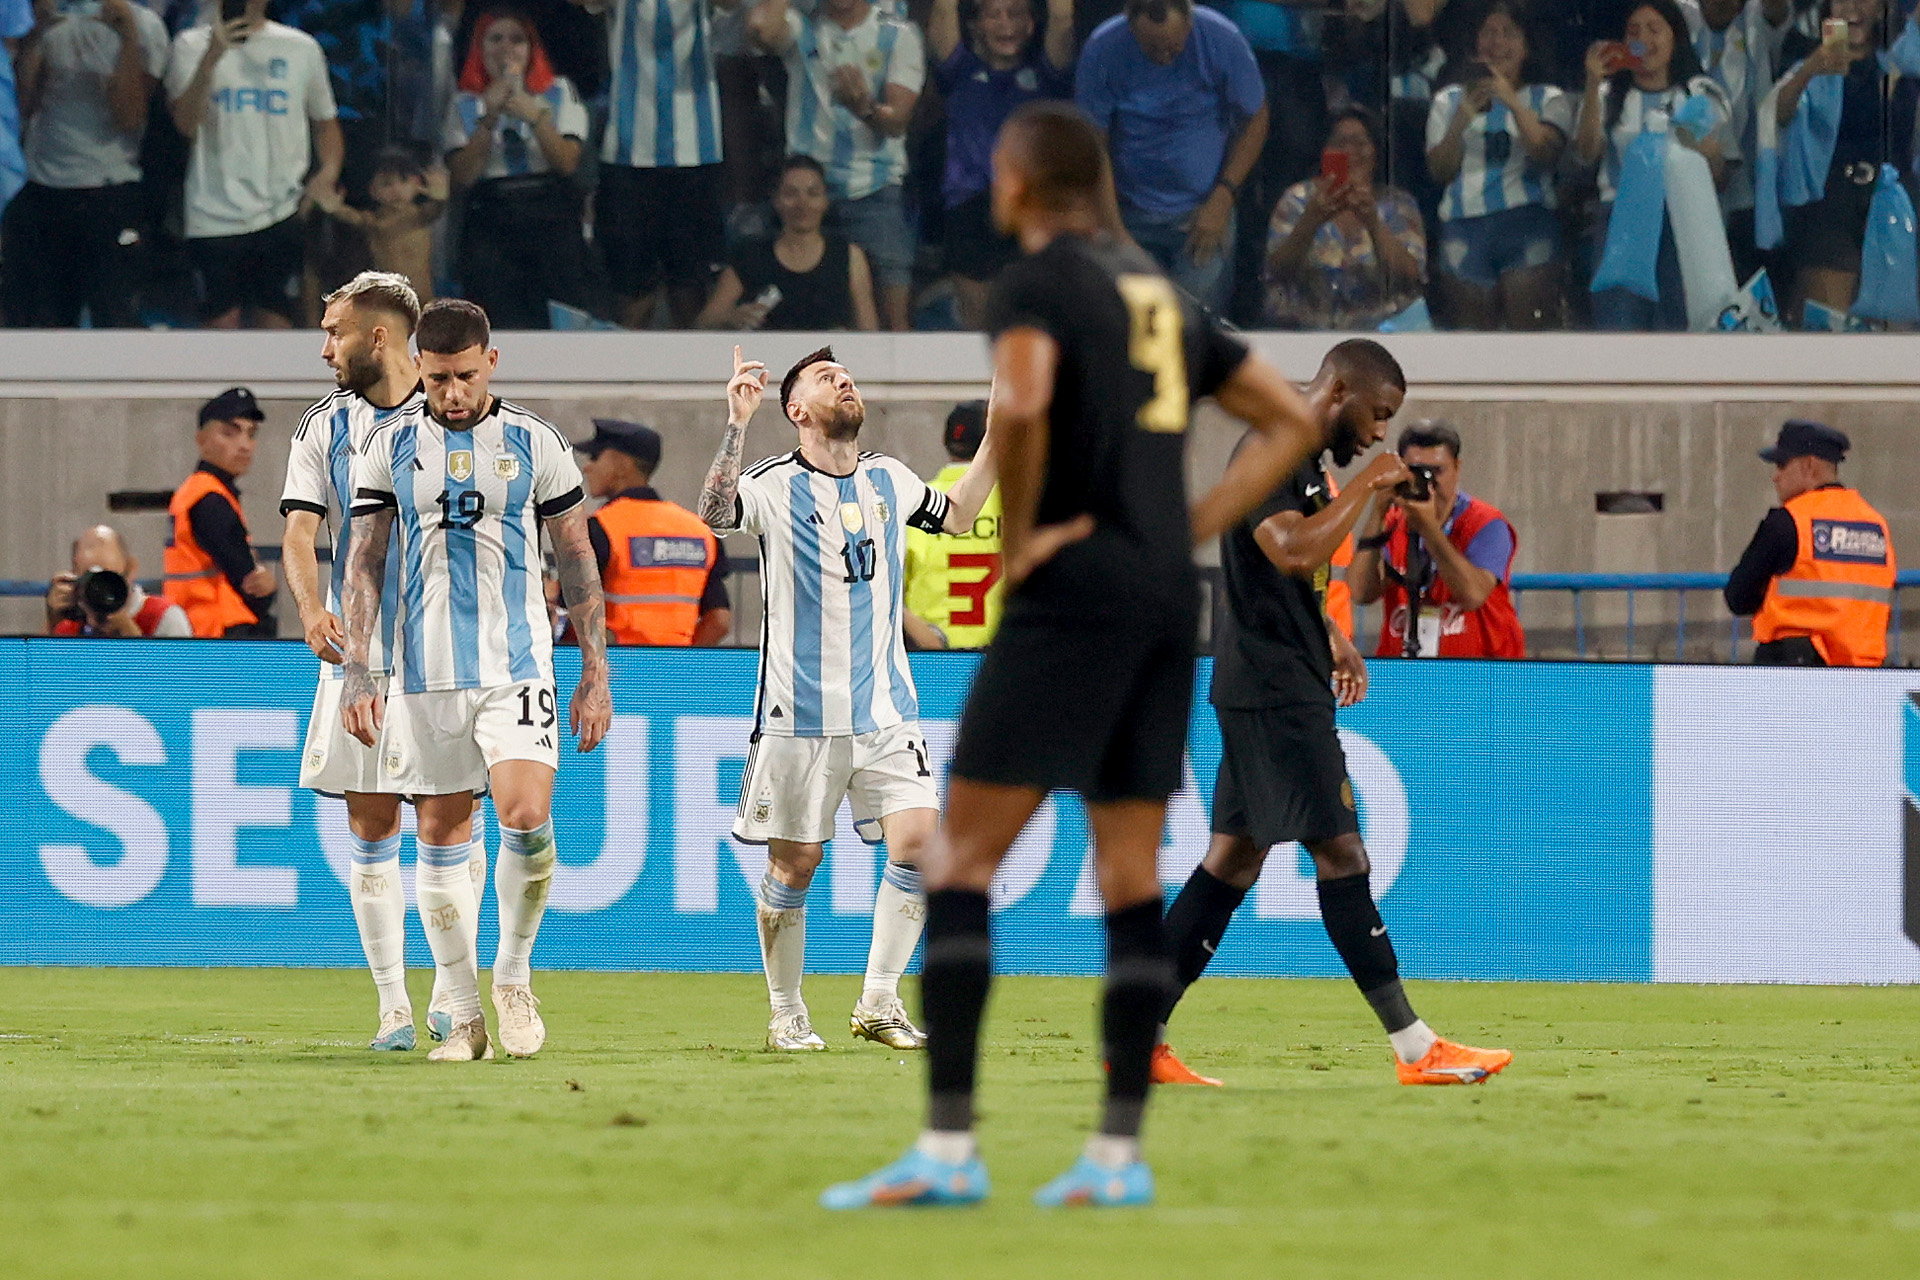 Con un hat-trick de Lionel Messi, Argentina goleó 7-0 a Curazao en la fiesta de los campeones del mundo